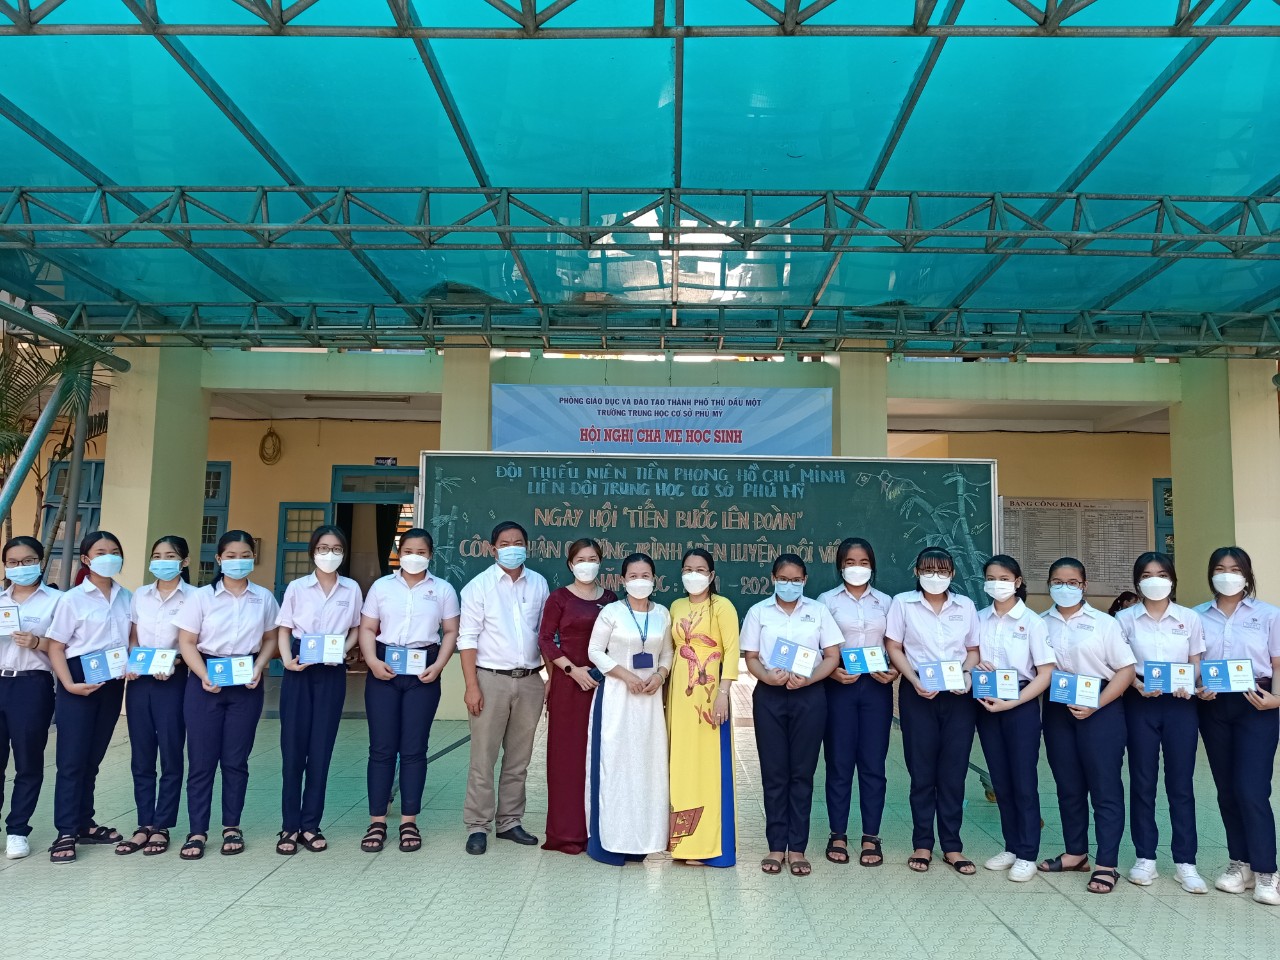 Trường THCS Phú Mỹ tổ chức ngày hội "Tiến bước lên đoàn"